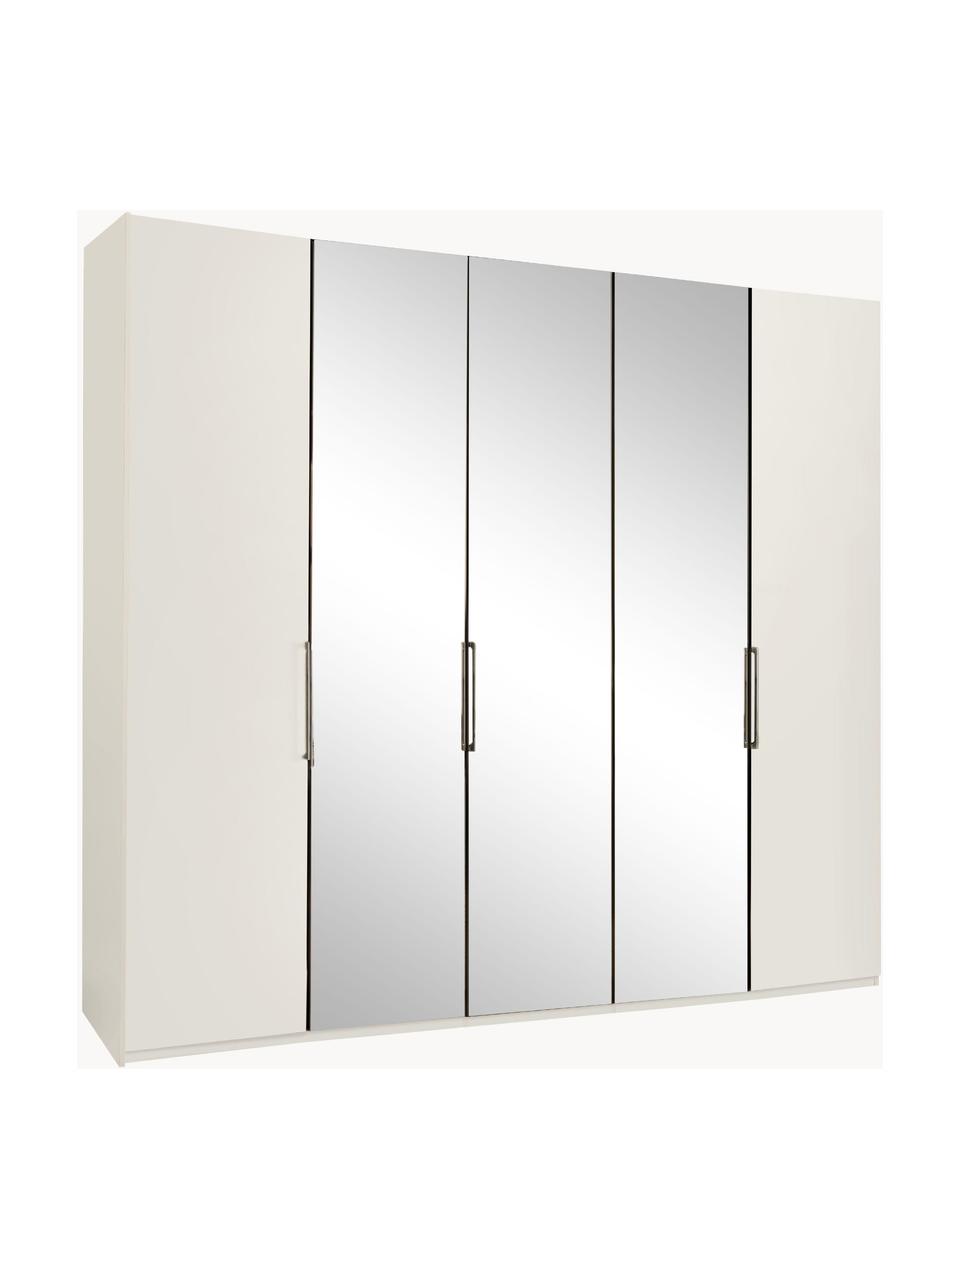 Šatní skříň se zrcadlovými dveřmi Monaco, 5dvéřová, Bílá, se zrcadlovými dveřmi, Š 247 cm, V 216 cm